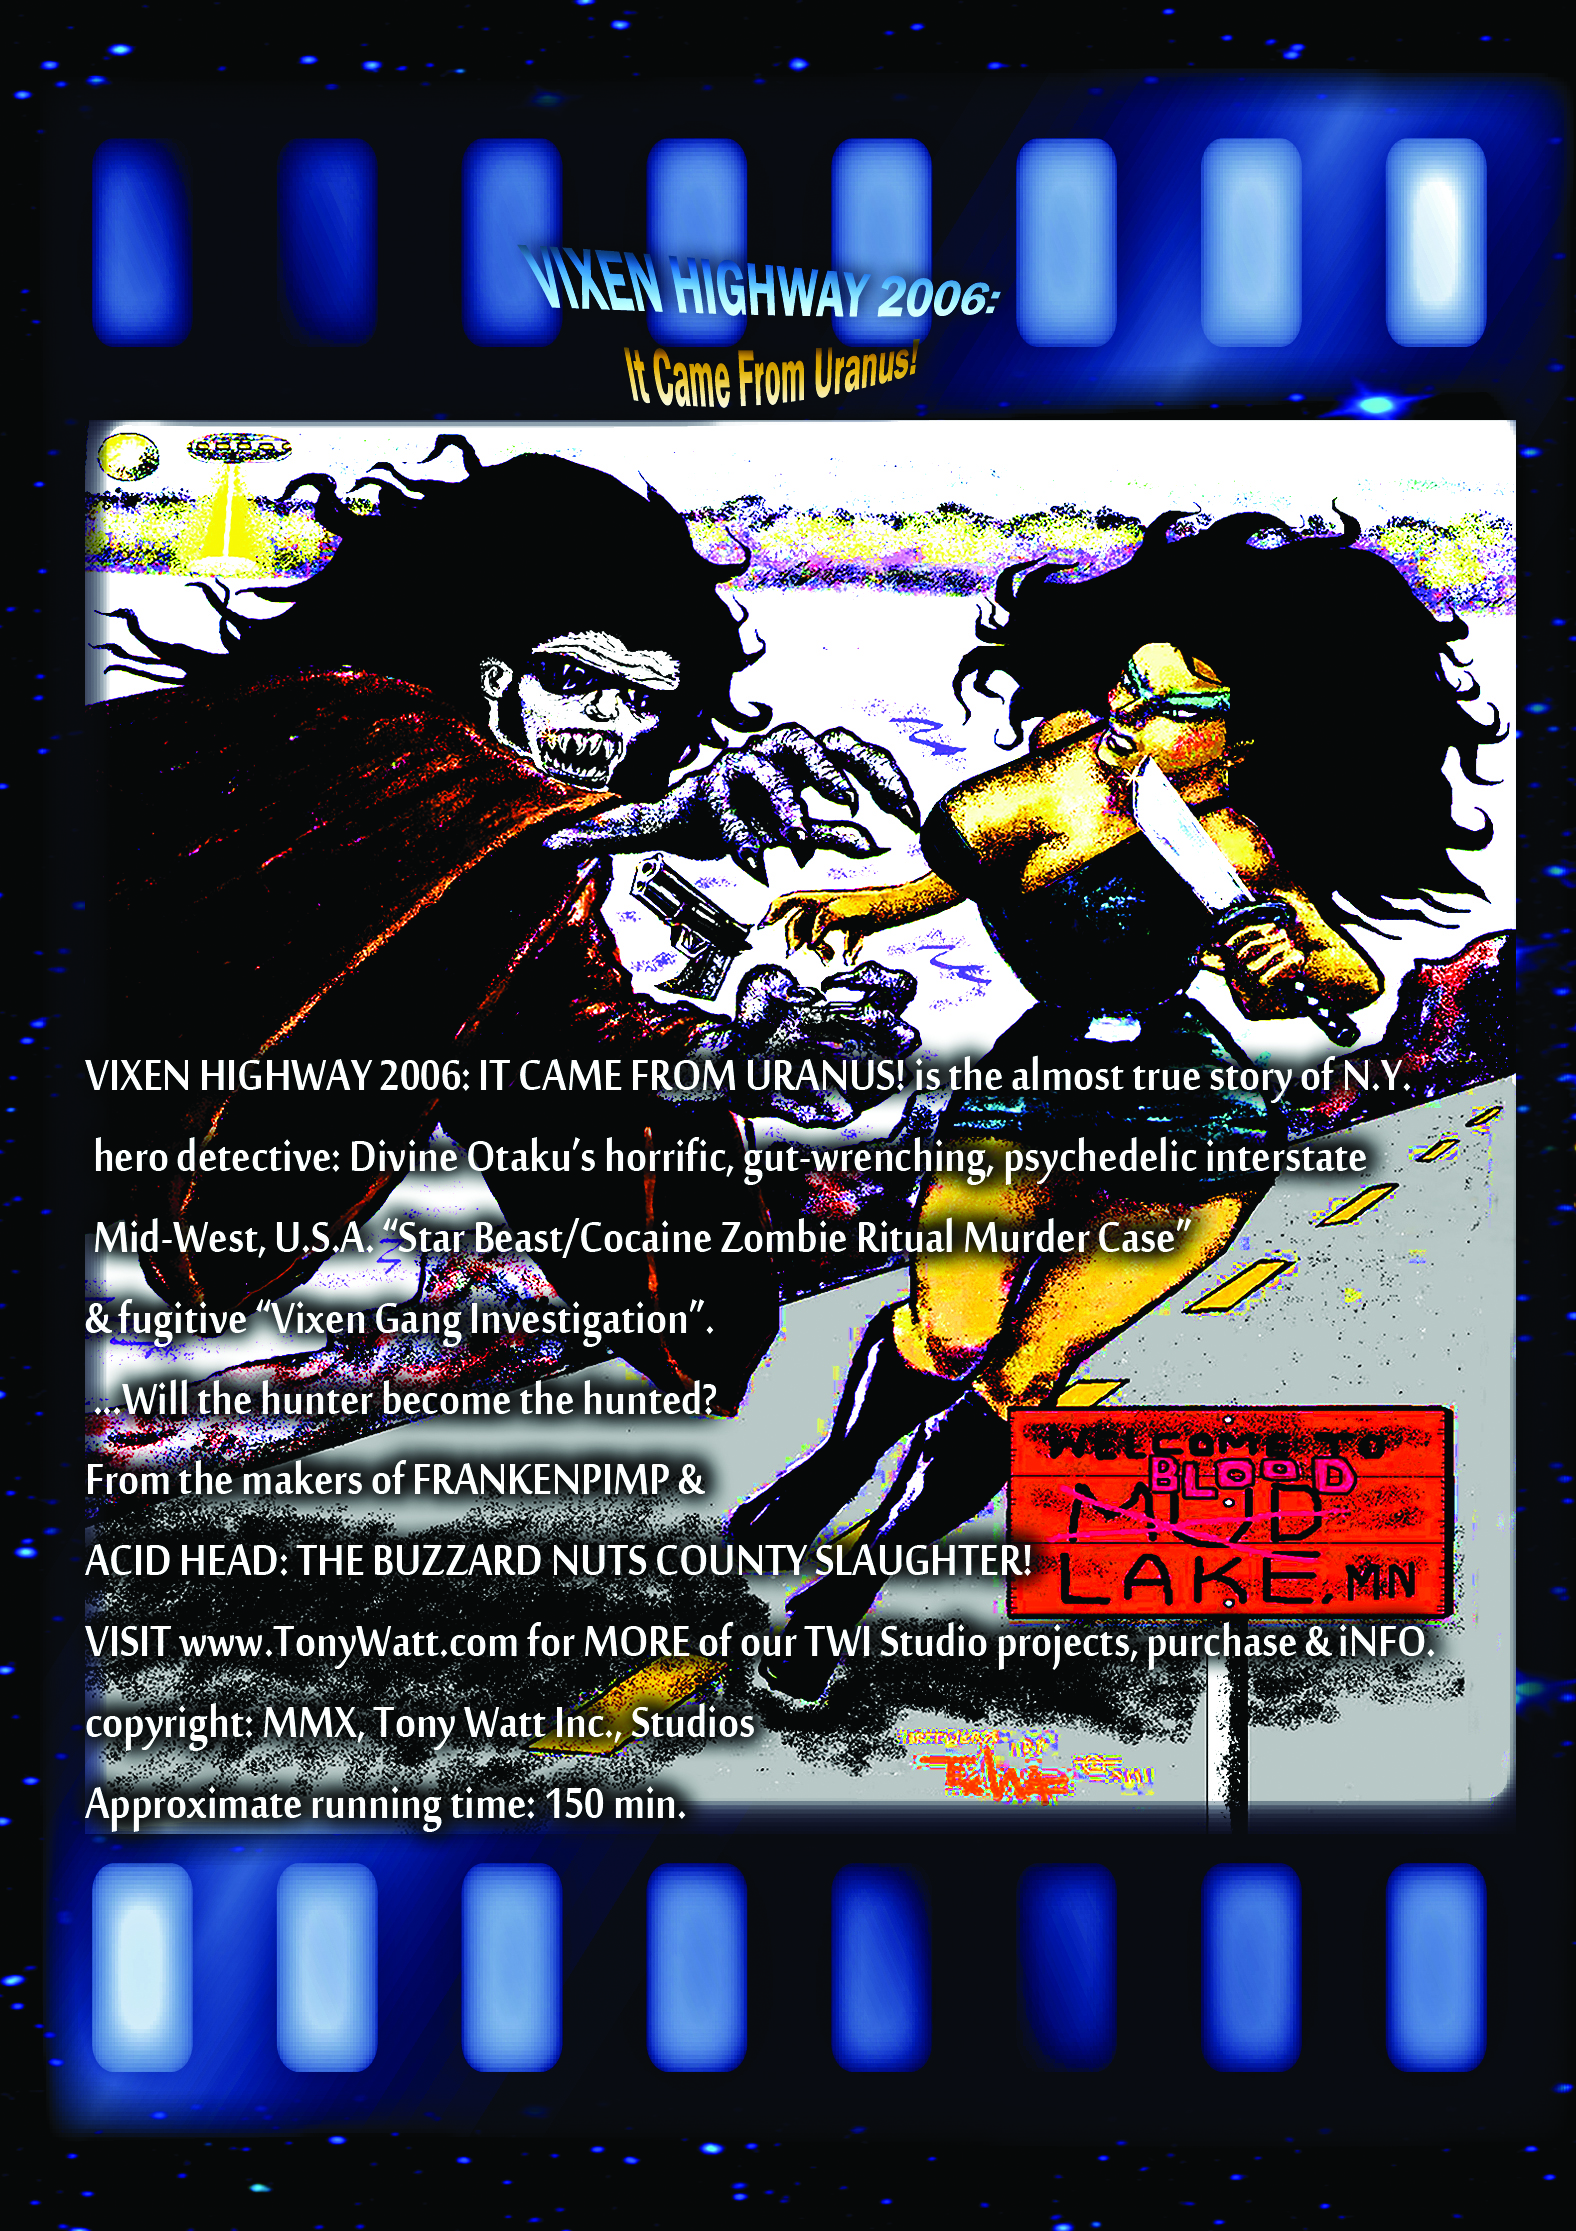 from the April/2006 VOD/DVD release: VIXEN HIGHWAY 2006: IT CAME FROM URANUS! Photo by Tony 'Tex' Watt & Vivita -Available Worldwide at Amazon & Vimeo & TonyWatt.com Copyright: Tony Watt Inc.,Studios; MMX http://TonyWatt.com